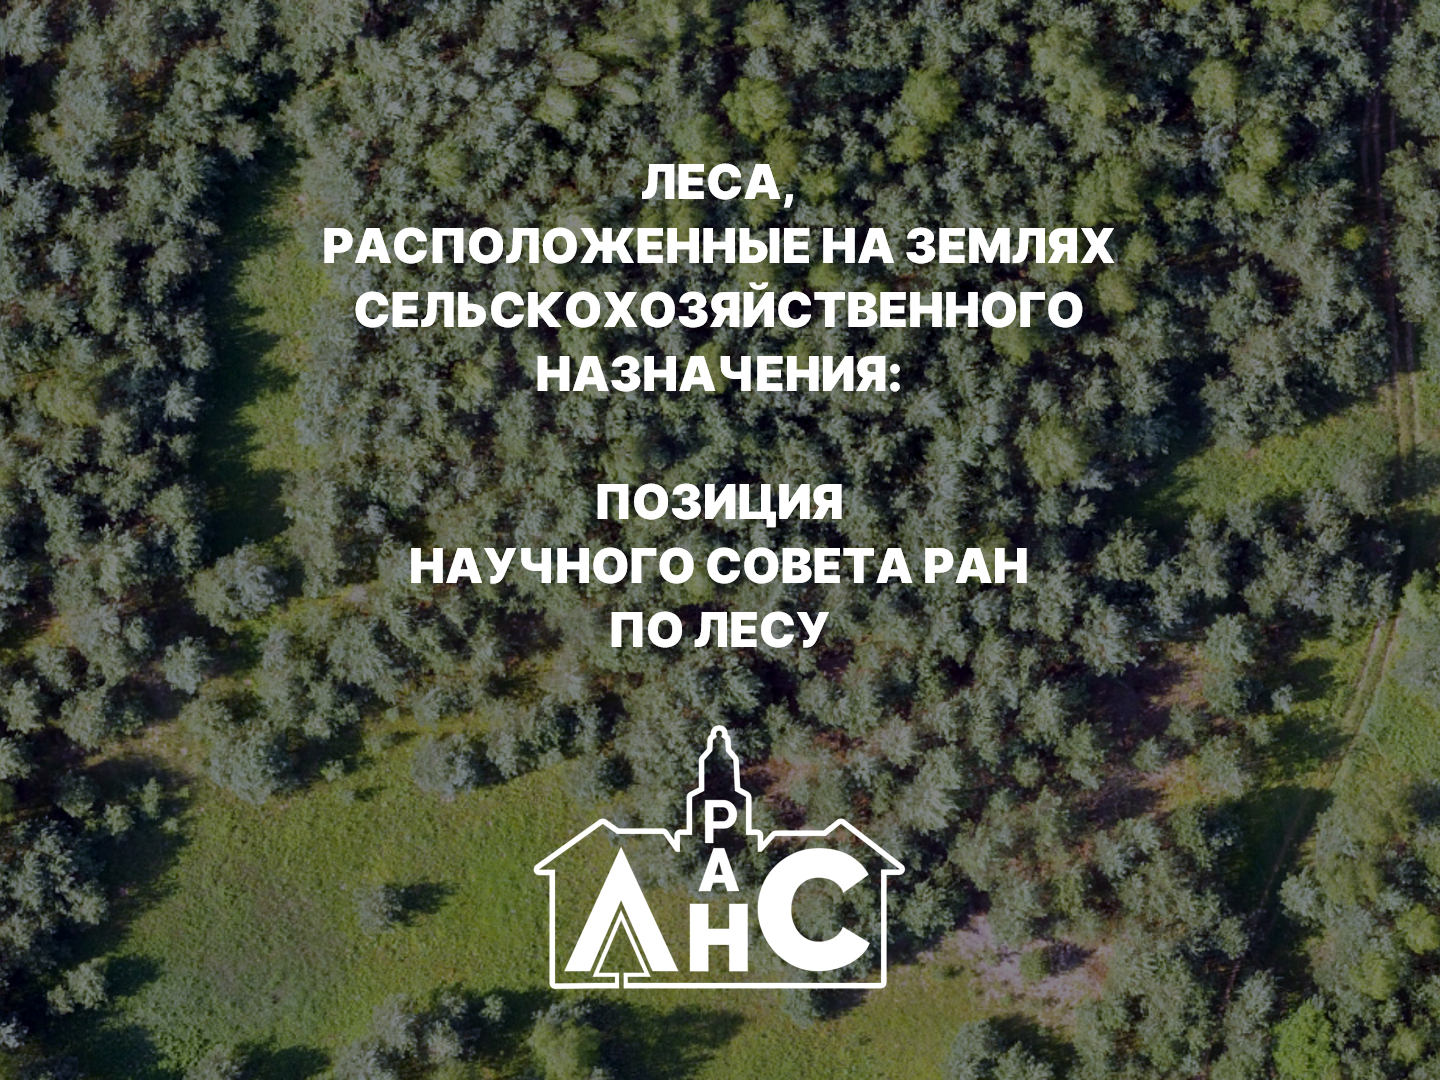 Леса, расположенные на землях сельскохозяйственного назначения: позиция Научного совета РАН по лесу